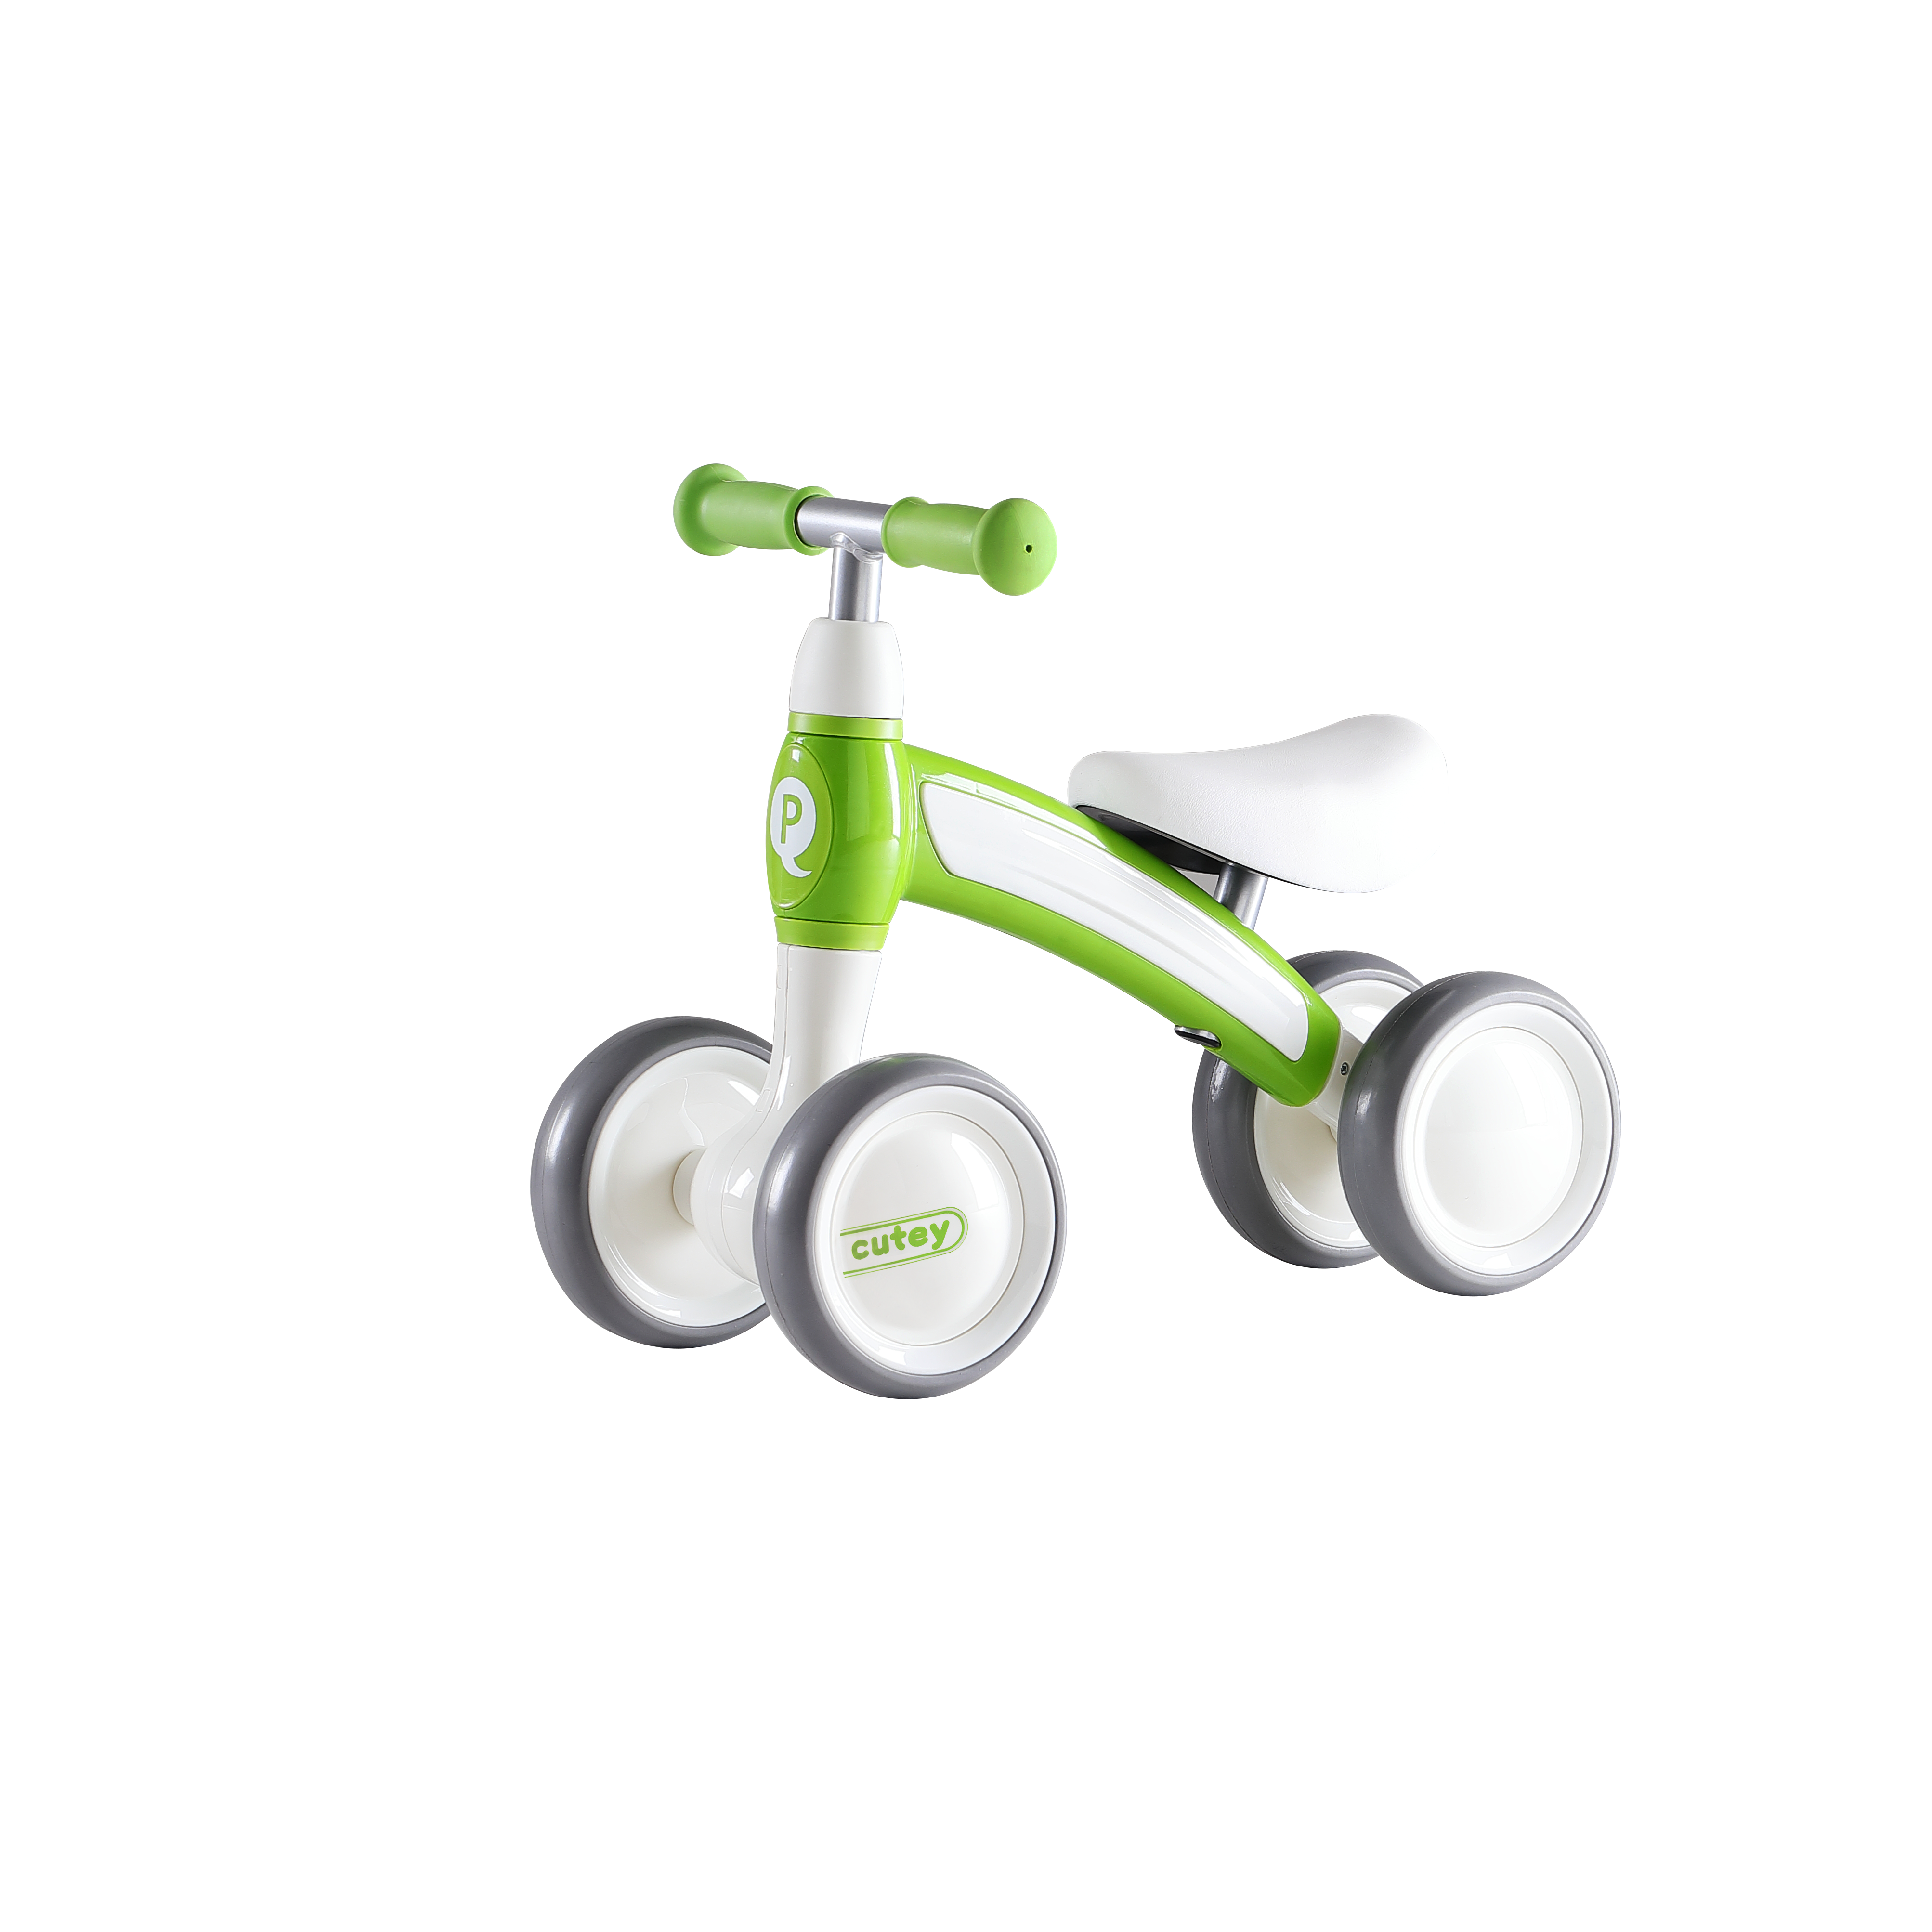 Біговел дитячий Qplay Cutey, чотириколісний, зелений (CuteyGreen) - фото 3